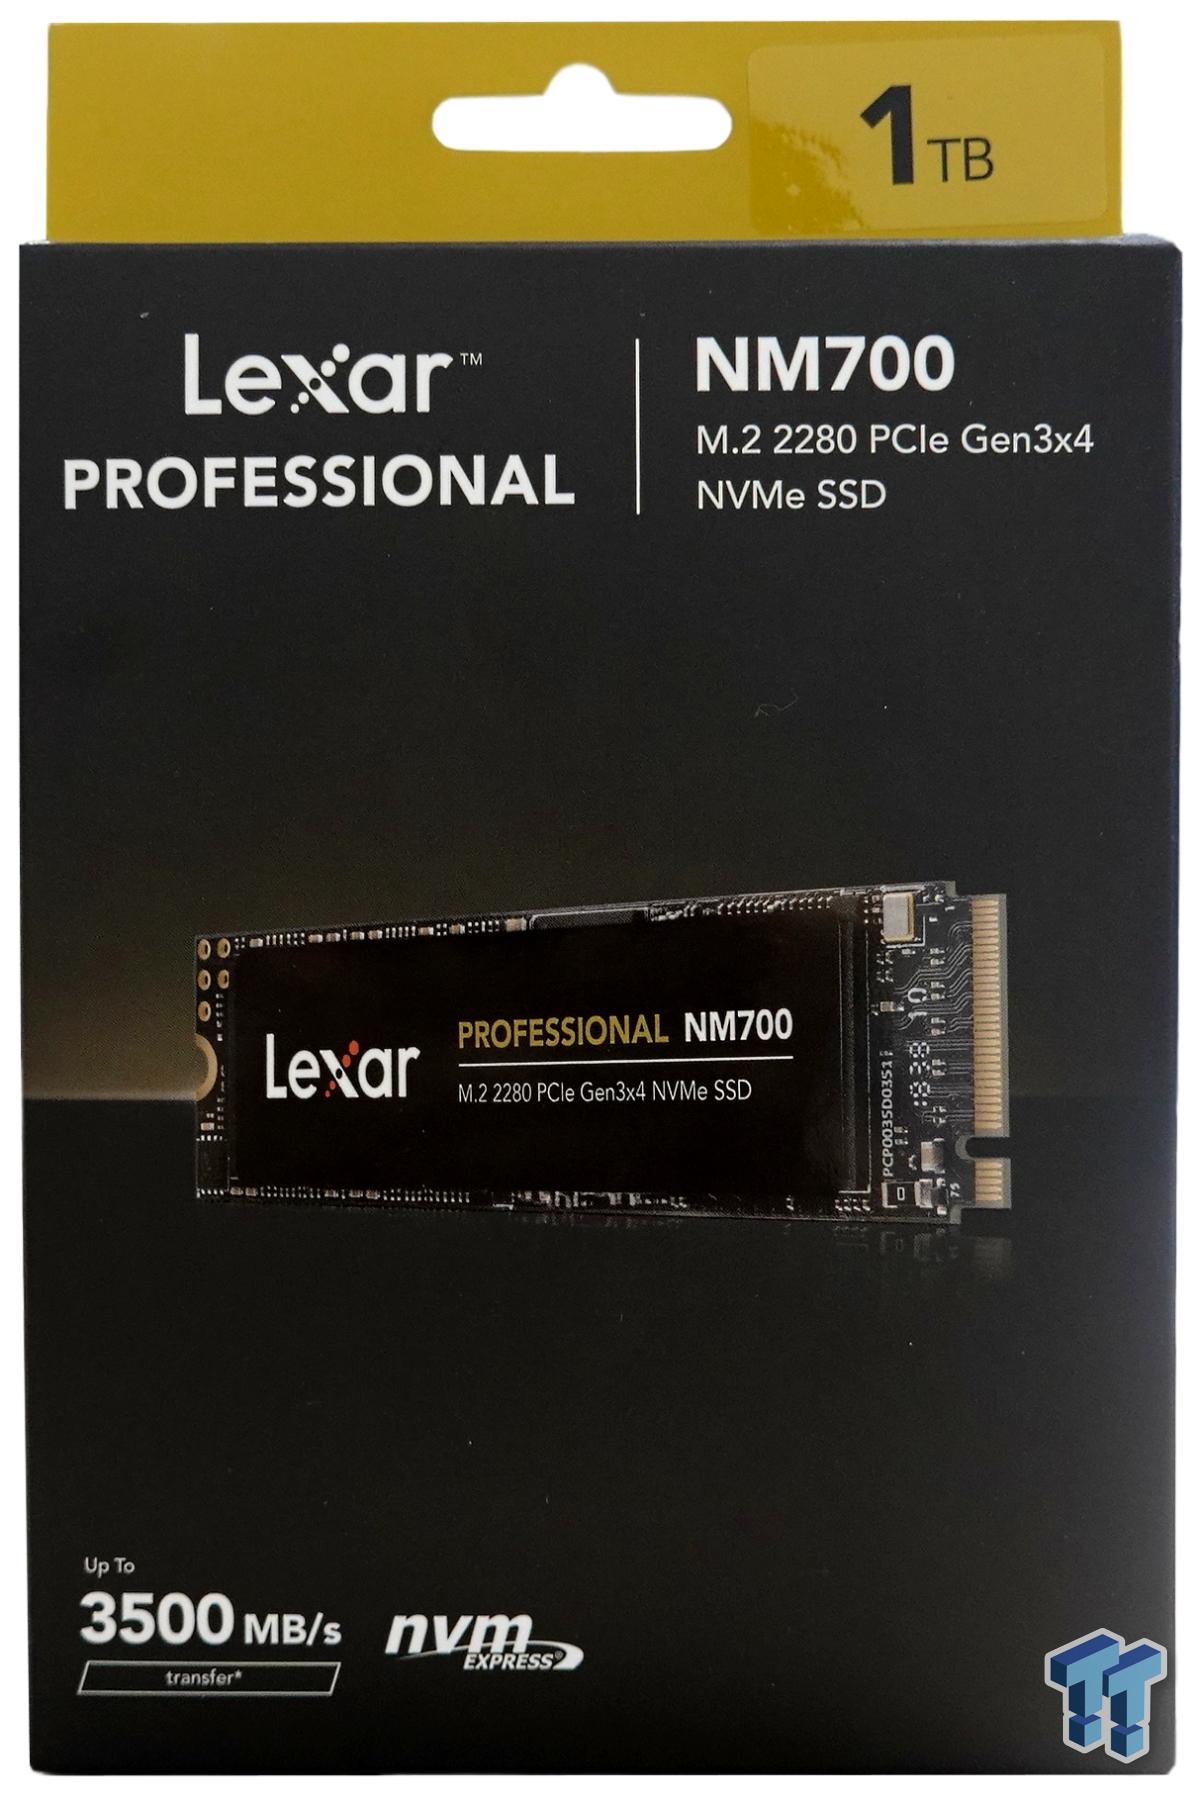 M.2 1TB NM700 Lexar SSD Professional Review